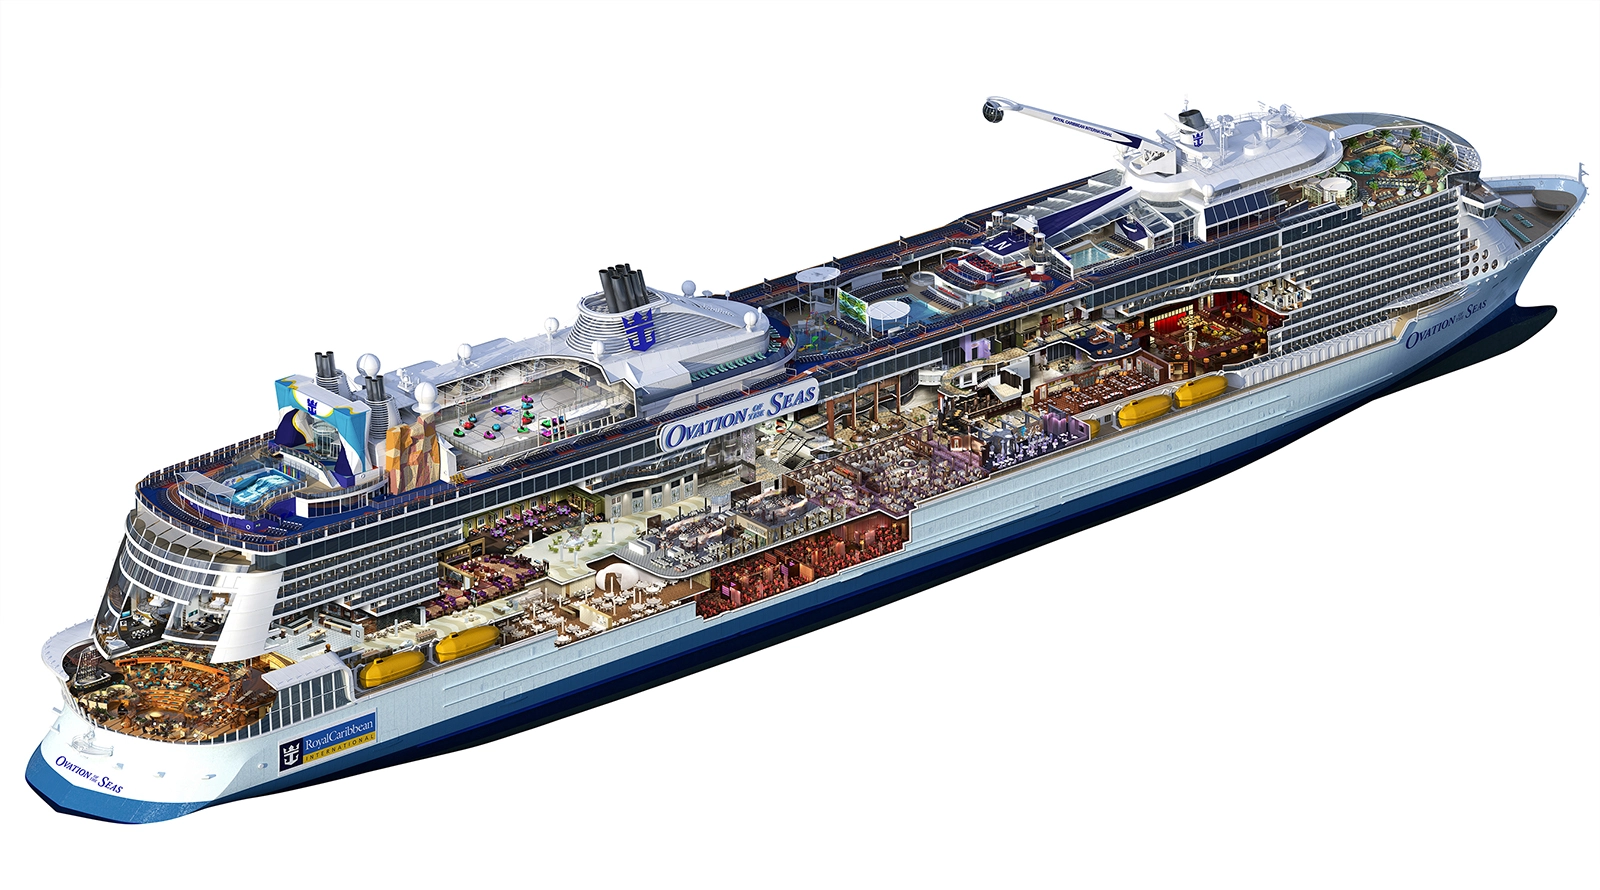 
Ovation of the Seas được đóng ở Đức. Nó dài 350 m, tương đương 3 lần chiều dài của một sân bóng đá tiêu chuẩn. Đây là tàu mới nhất thuộc lớp Quantum của Royal Caribbean. Ngoài tiện nghi sang trọng, tàu còn gây ấn tượng mạnh với hành khách nhờ những công nghệ tiên tiến nhất thế giới.
